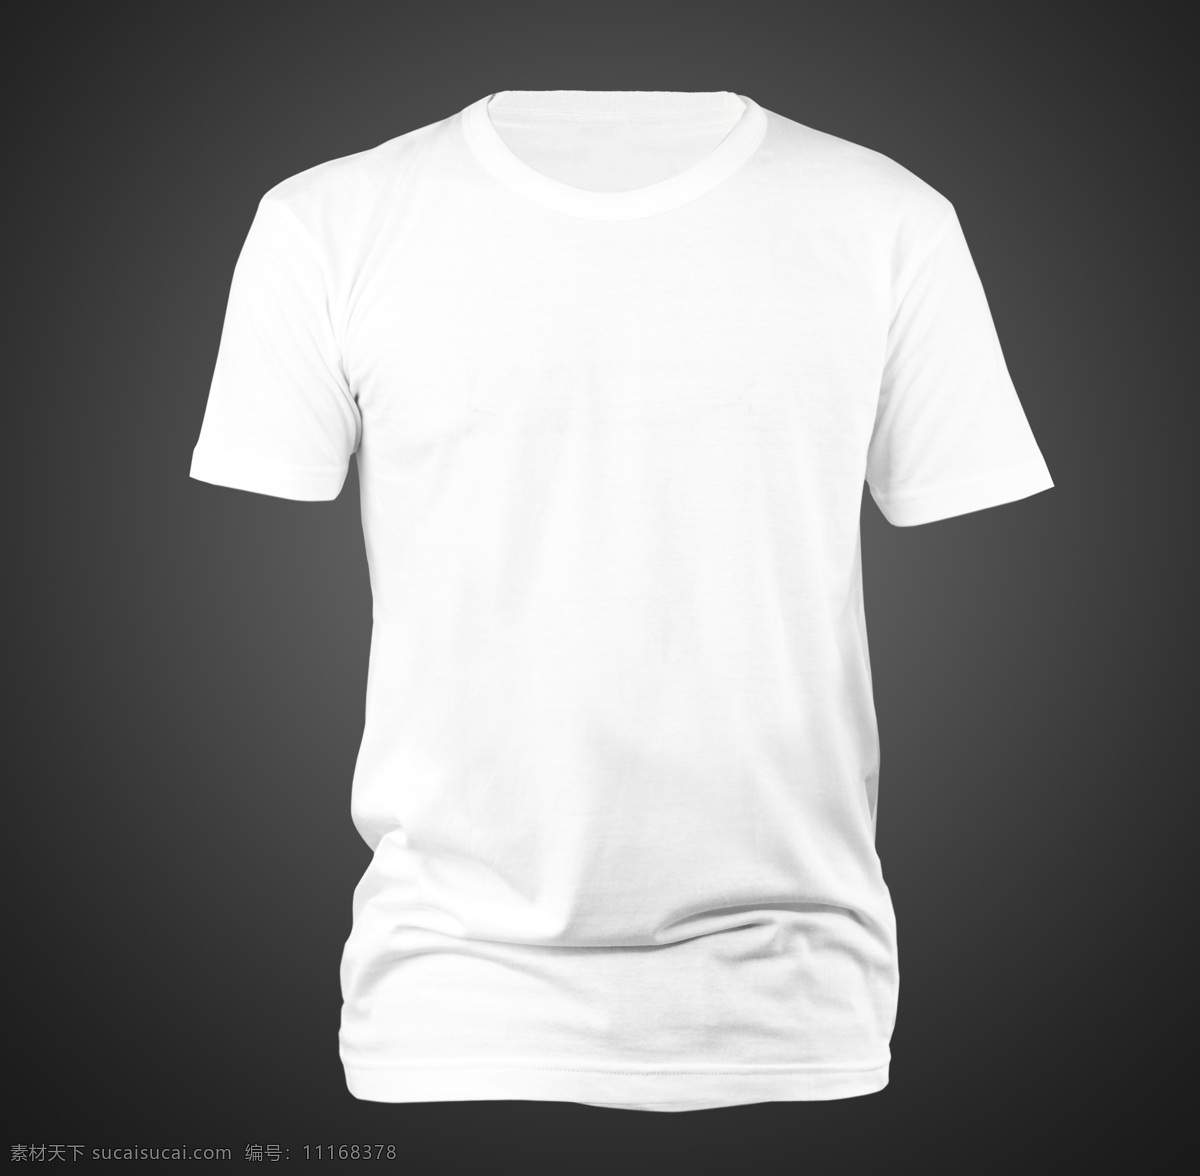 白色t恤 t恤展示效果 空白t恤效果 年轻人 t恤 展示效果 t恤模板 短袖t恤衫 t恤展示 t恤设计 服装设计